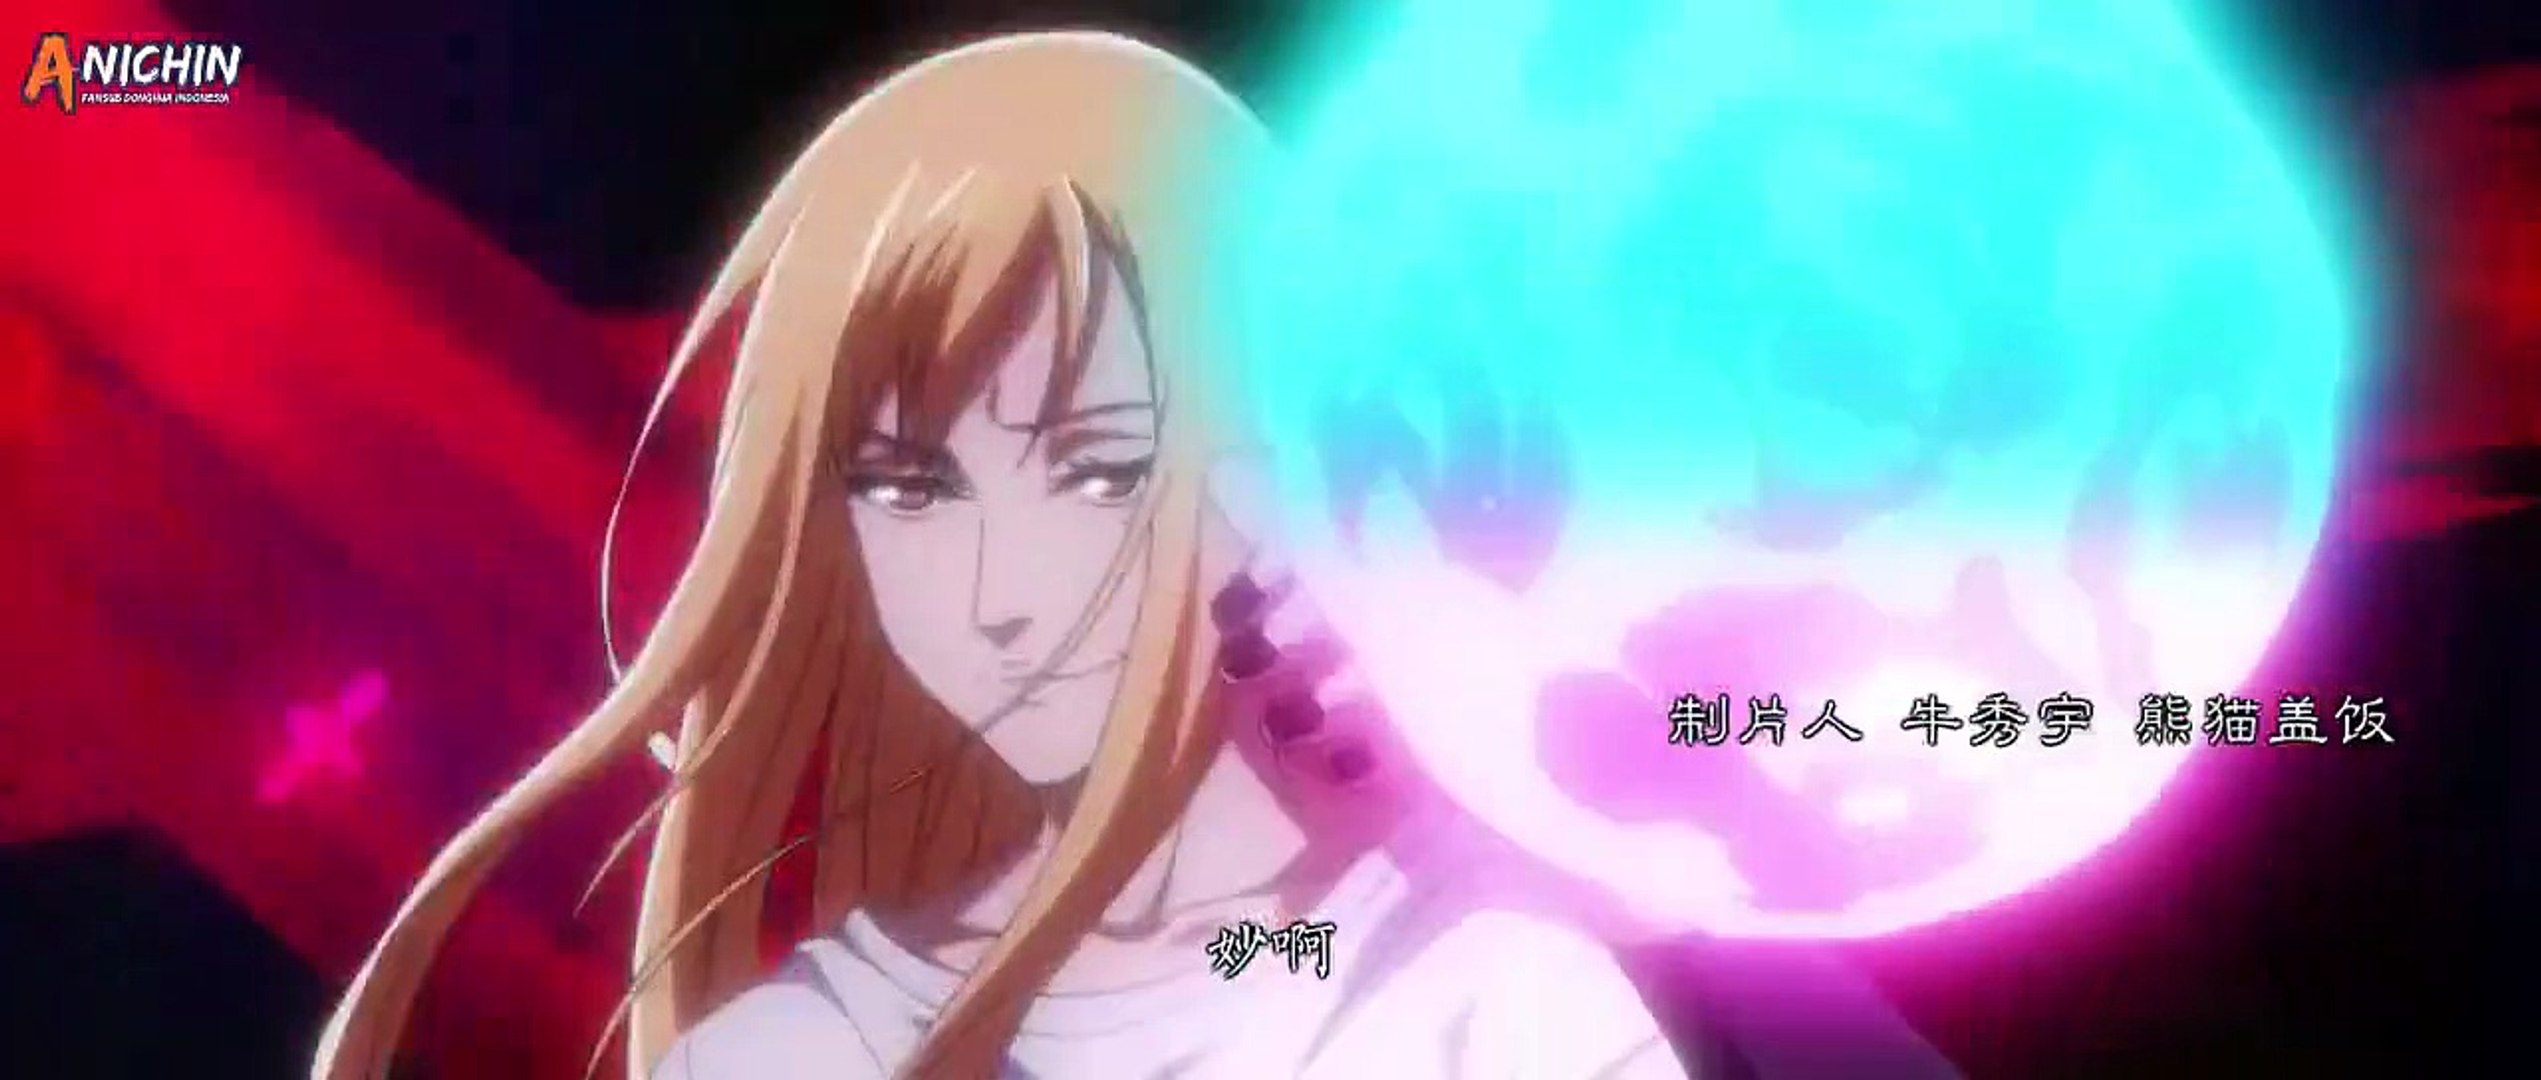 Anime: Hitori no Shita (T°1) Episódio 01 - Uma Escuridão o Cerca (Legendado)  HD 